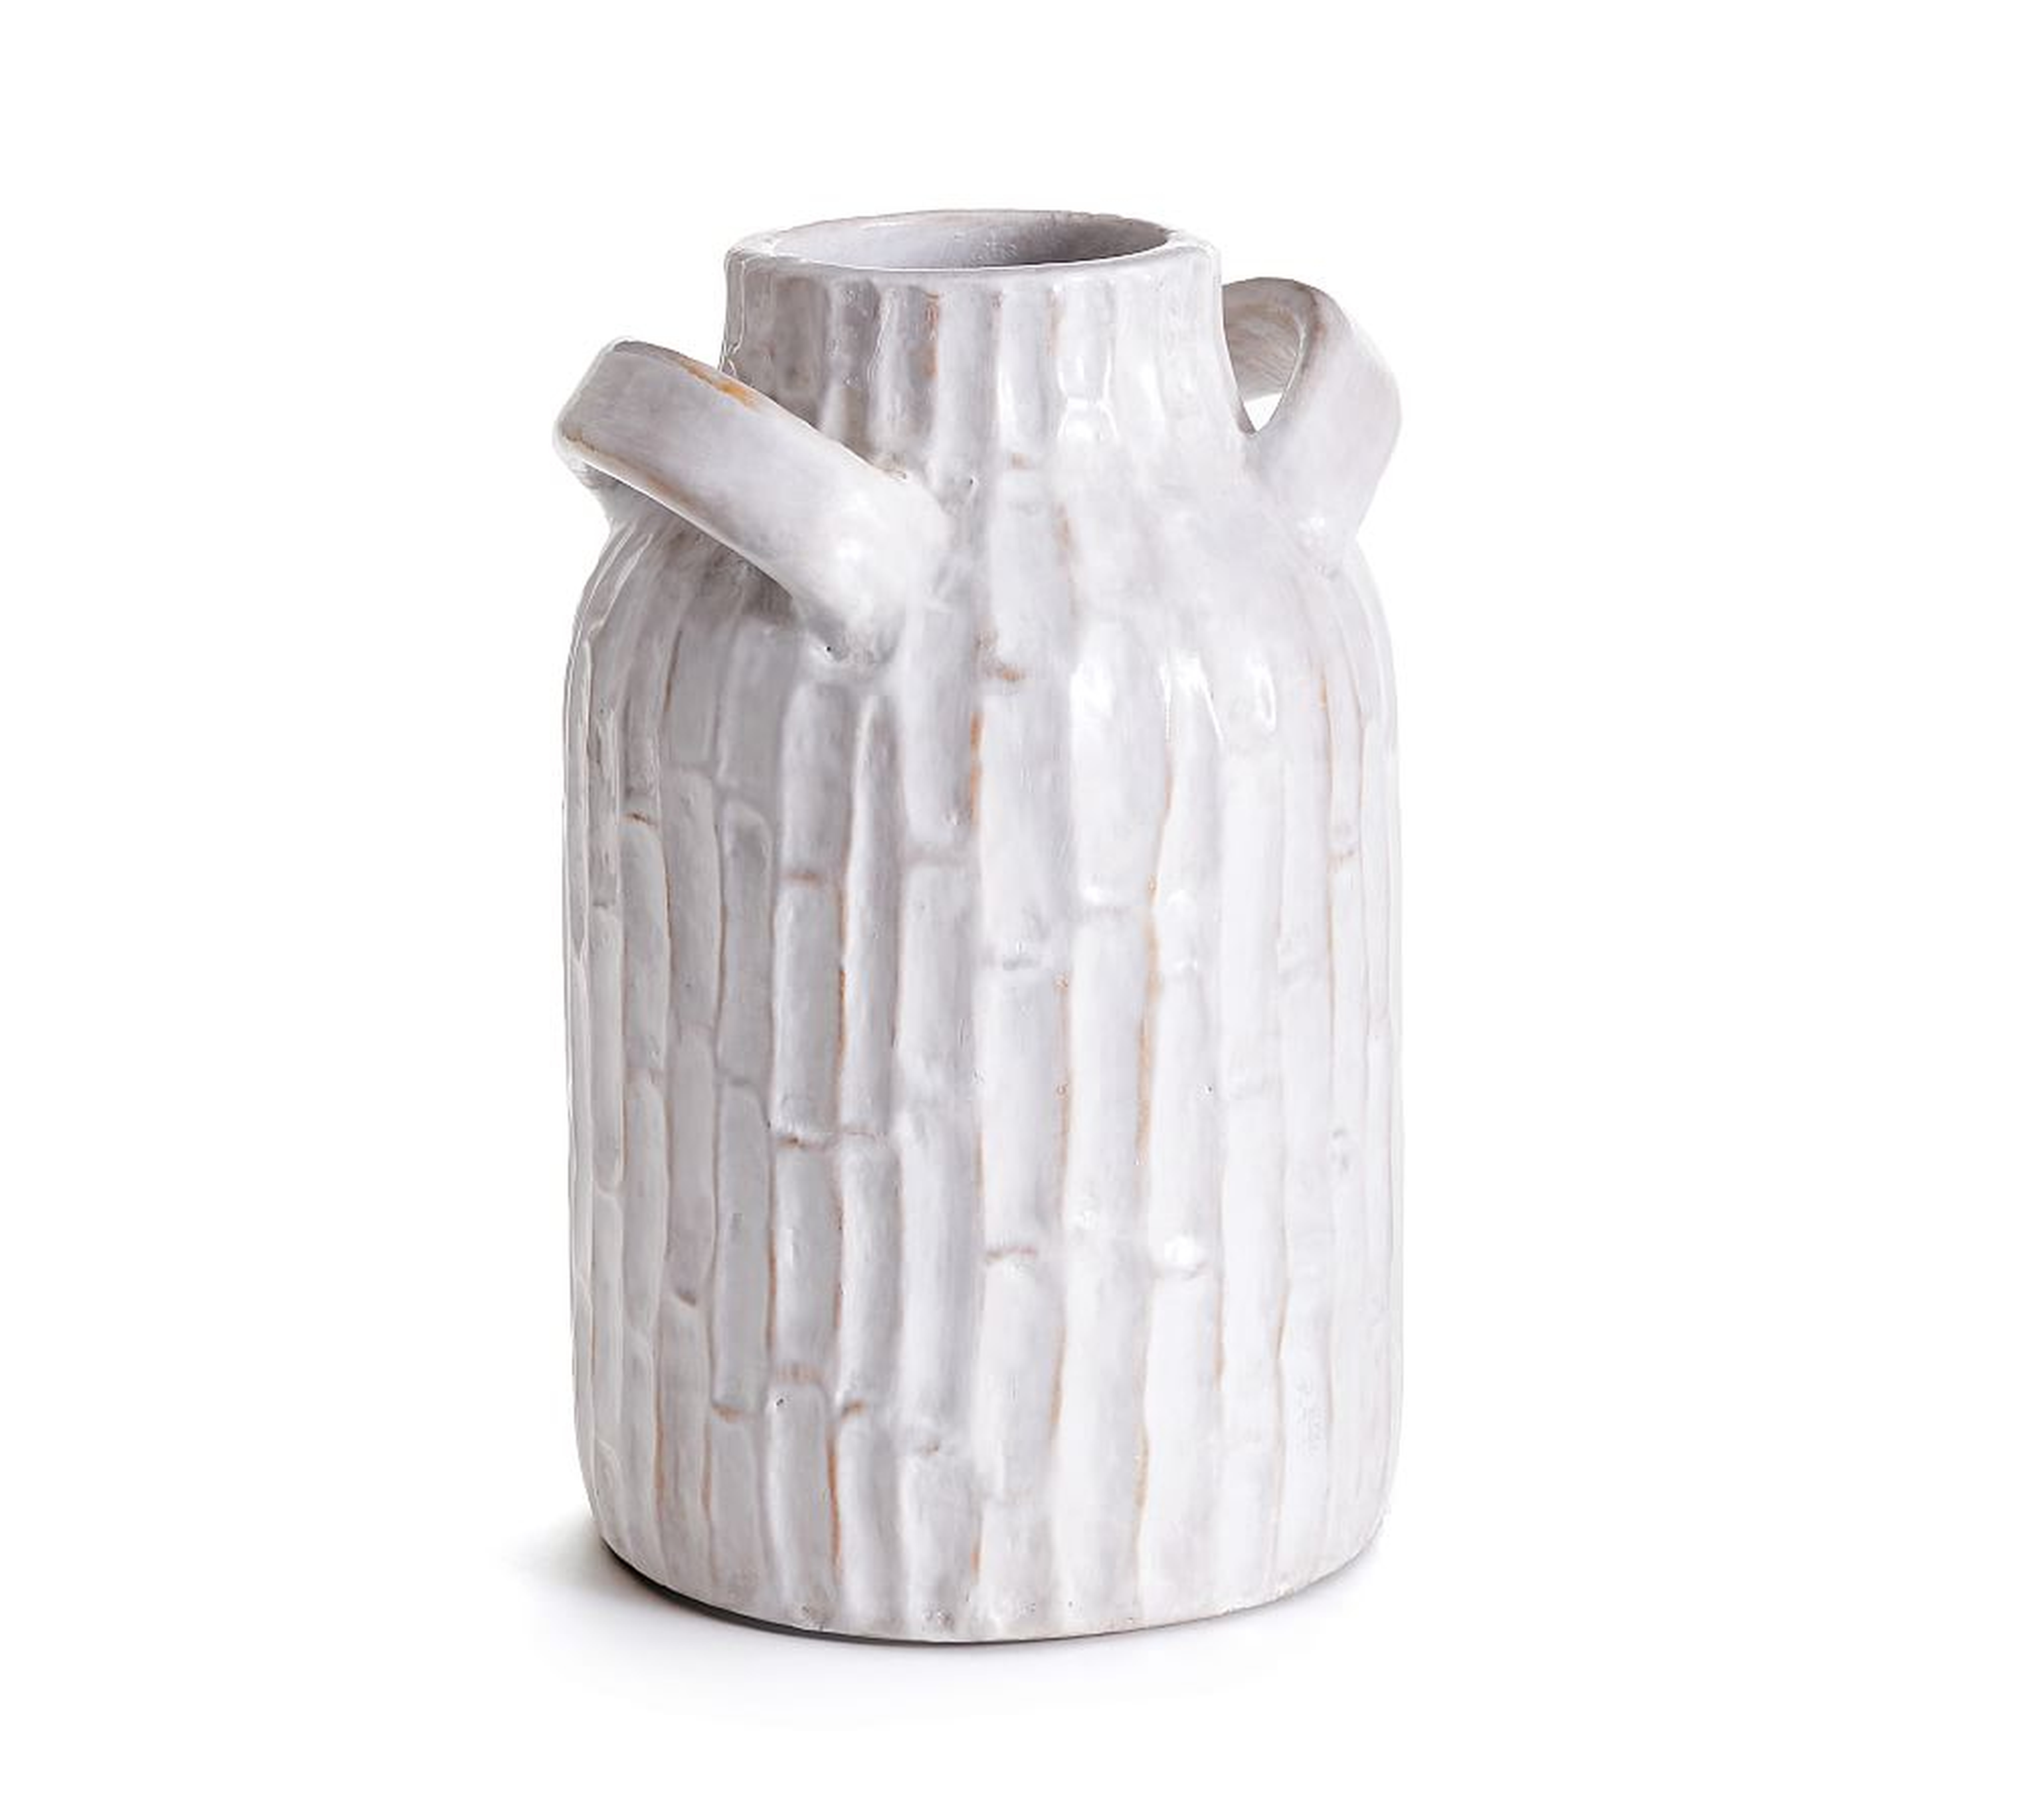 Vivian Terra Cotta Vase, White, 12"H - Pottery Barn